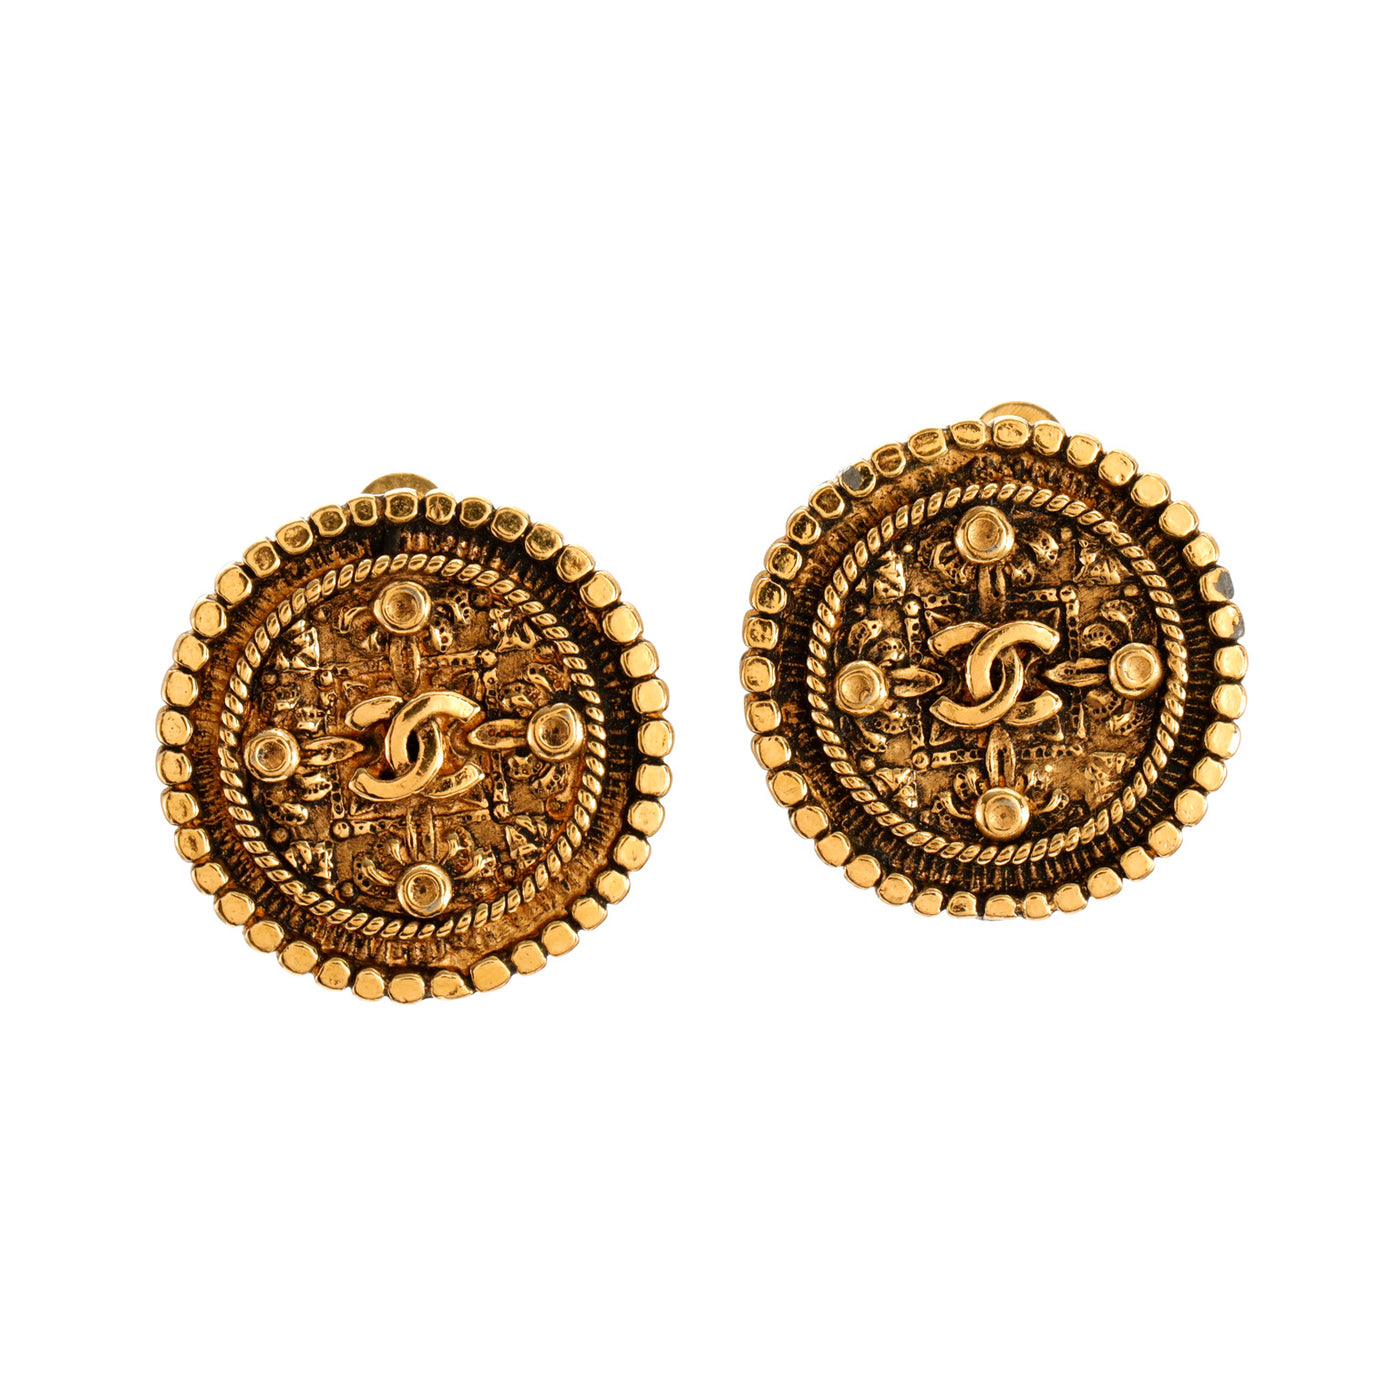 Chanel Vintage Gold Ornate Medallion Earrings